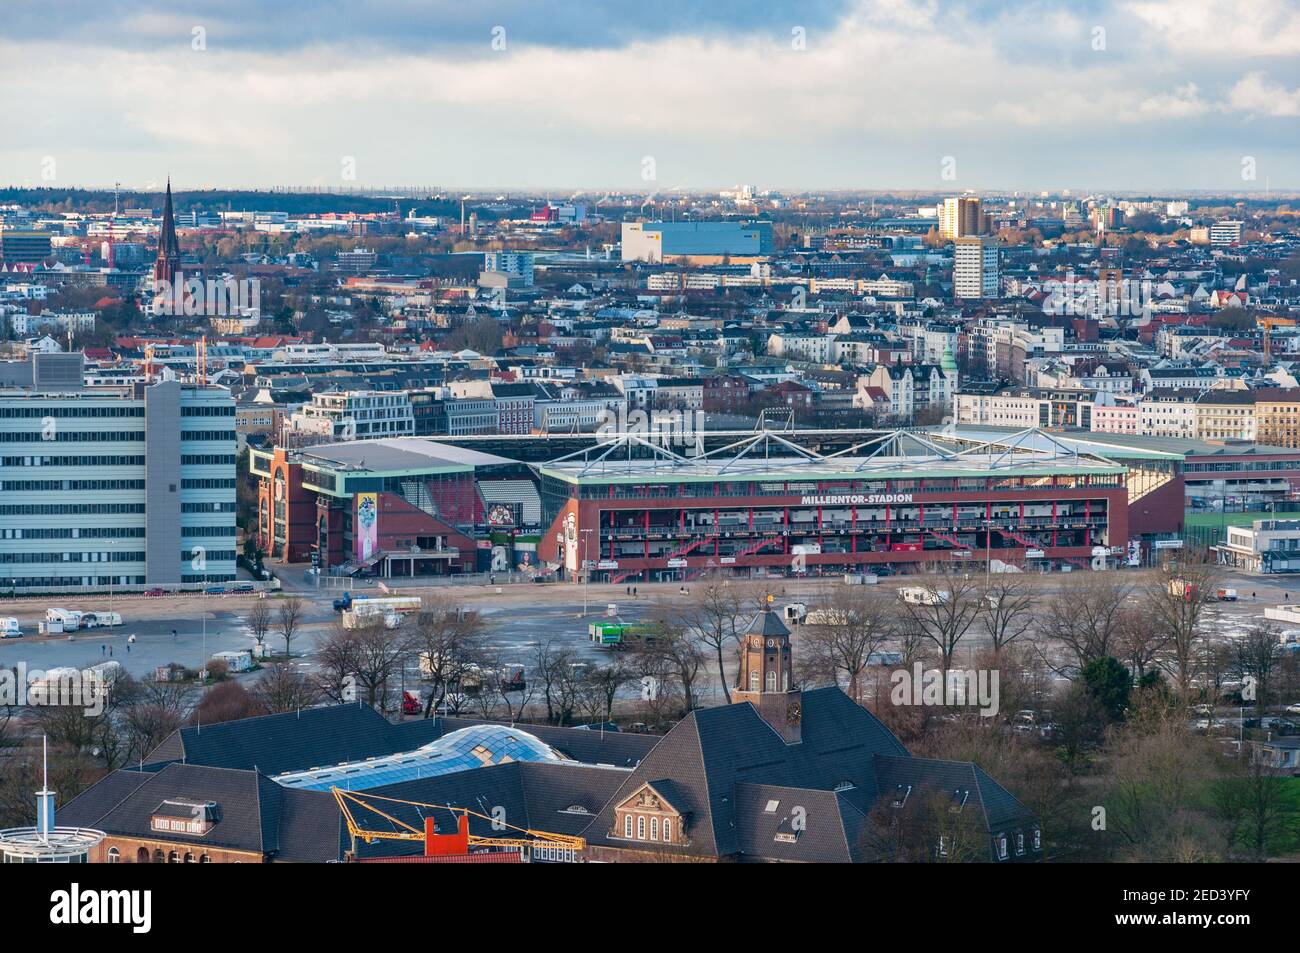 Hamburg Deutschland - Dezember 16. 2017: Das Millerntor Stadion ist das Heimstadion der deutschen Fußballmannschaft St. Pauli Stockfoto